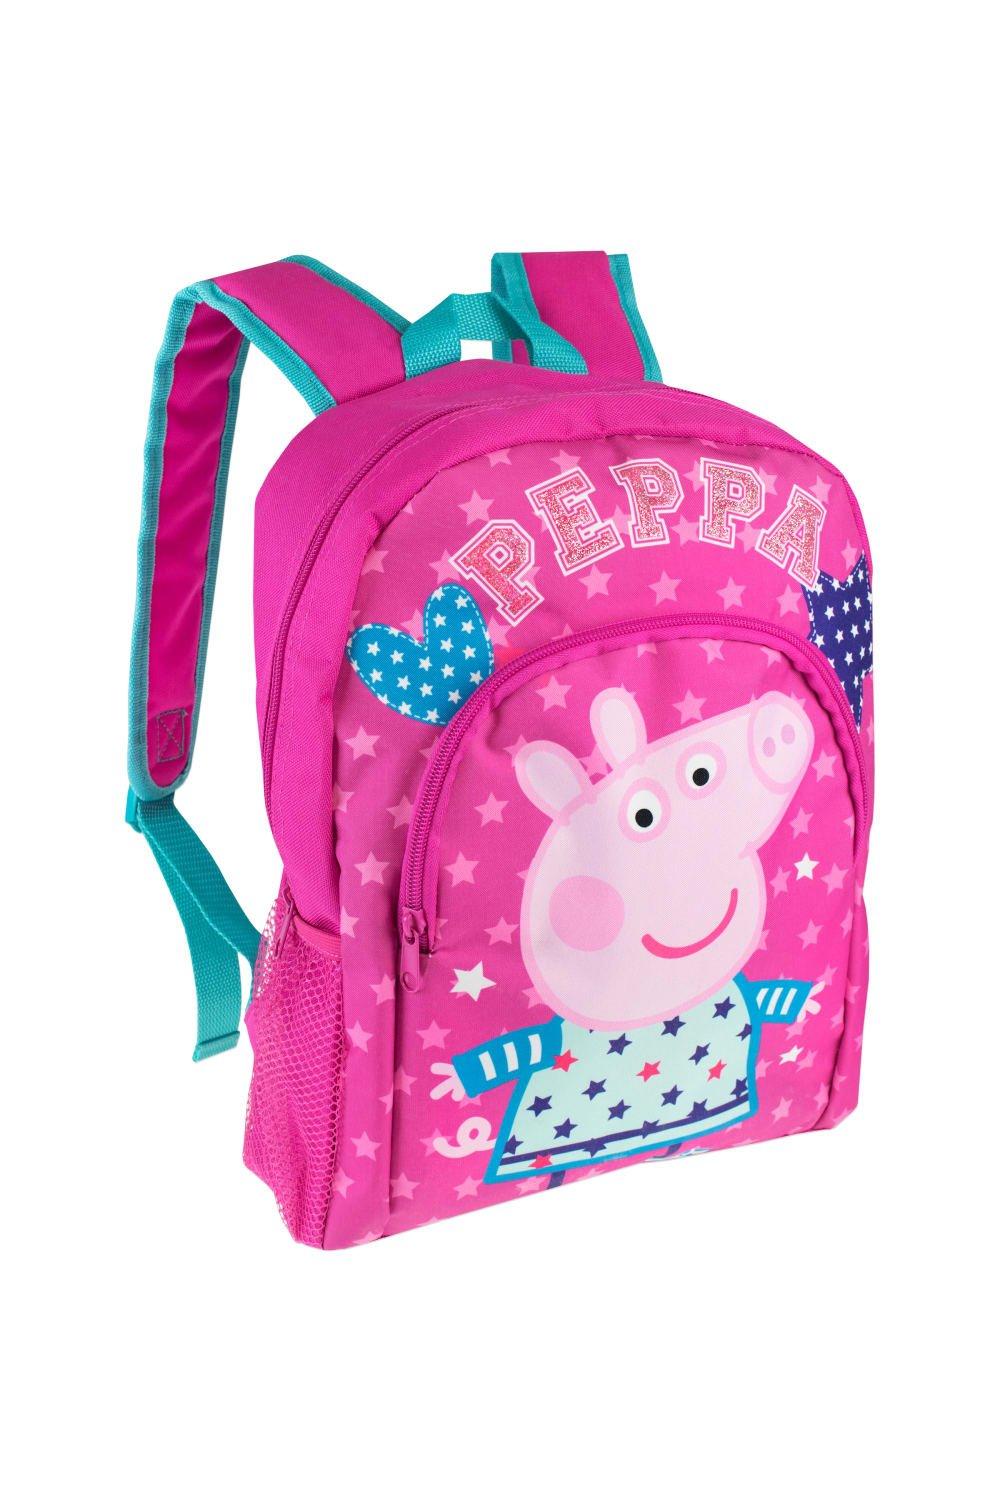 Детский рюкзак Peppa Pig, розовый пазлы alatoys свинка пеппа детская площадка пзл2023